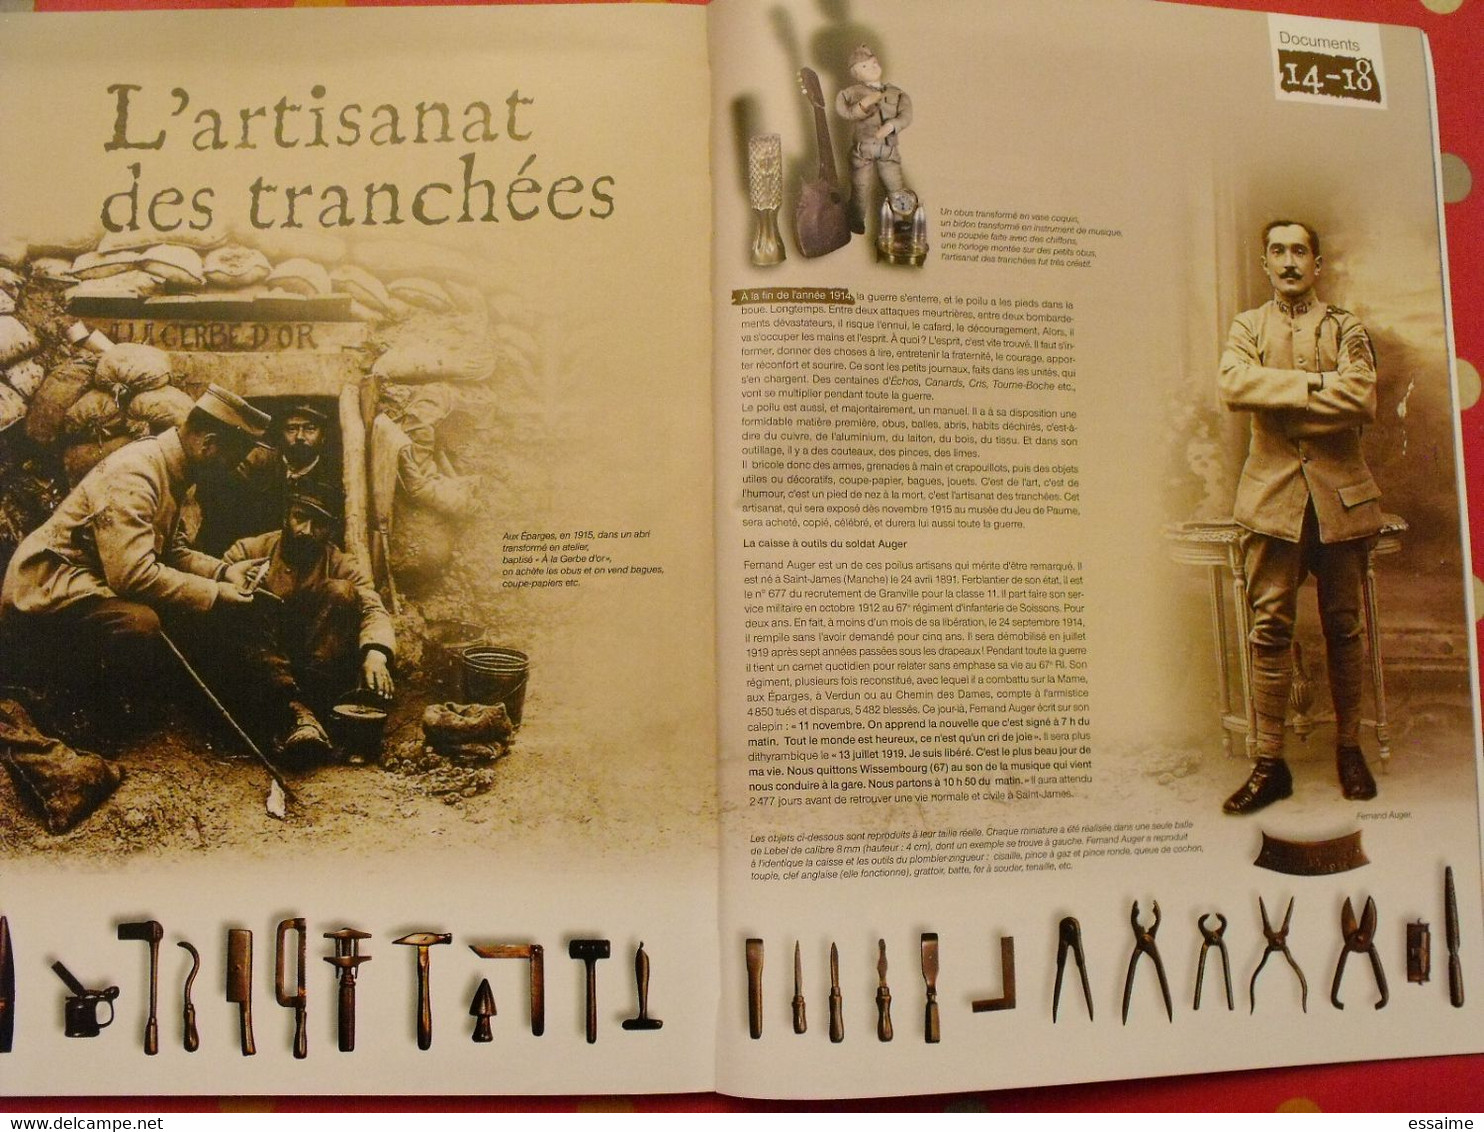 l'ouest dans la grande guerre 14-18. Ouest-France hors série. poilus batailles témoignages documents inédits